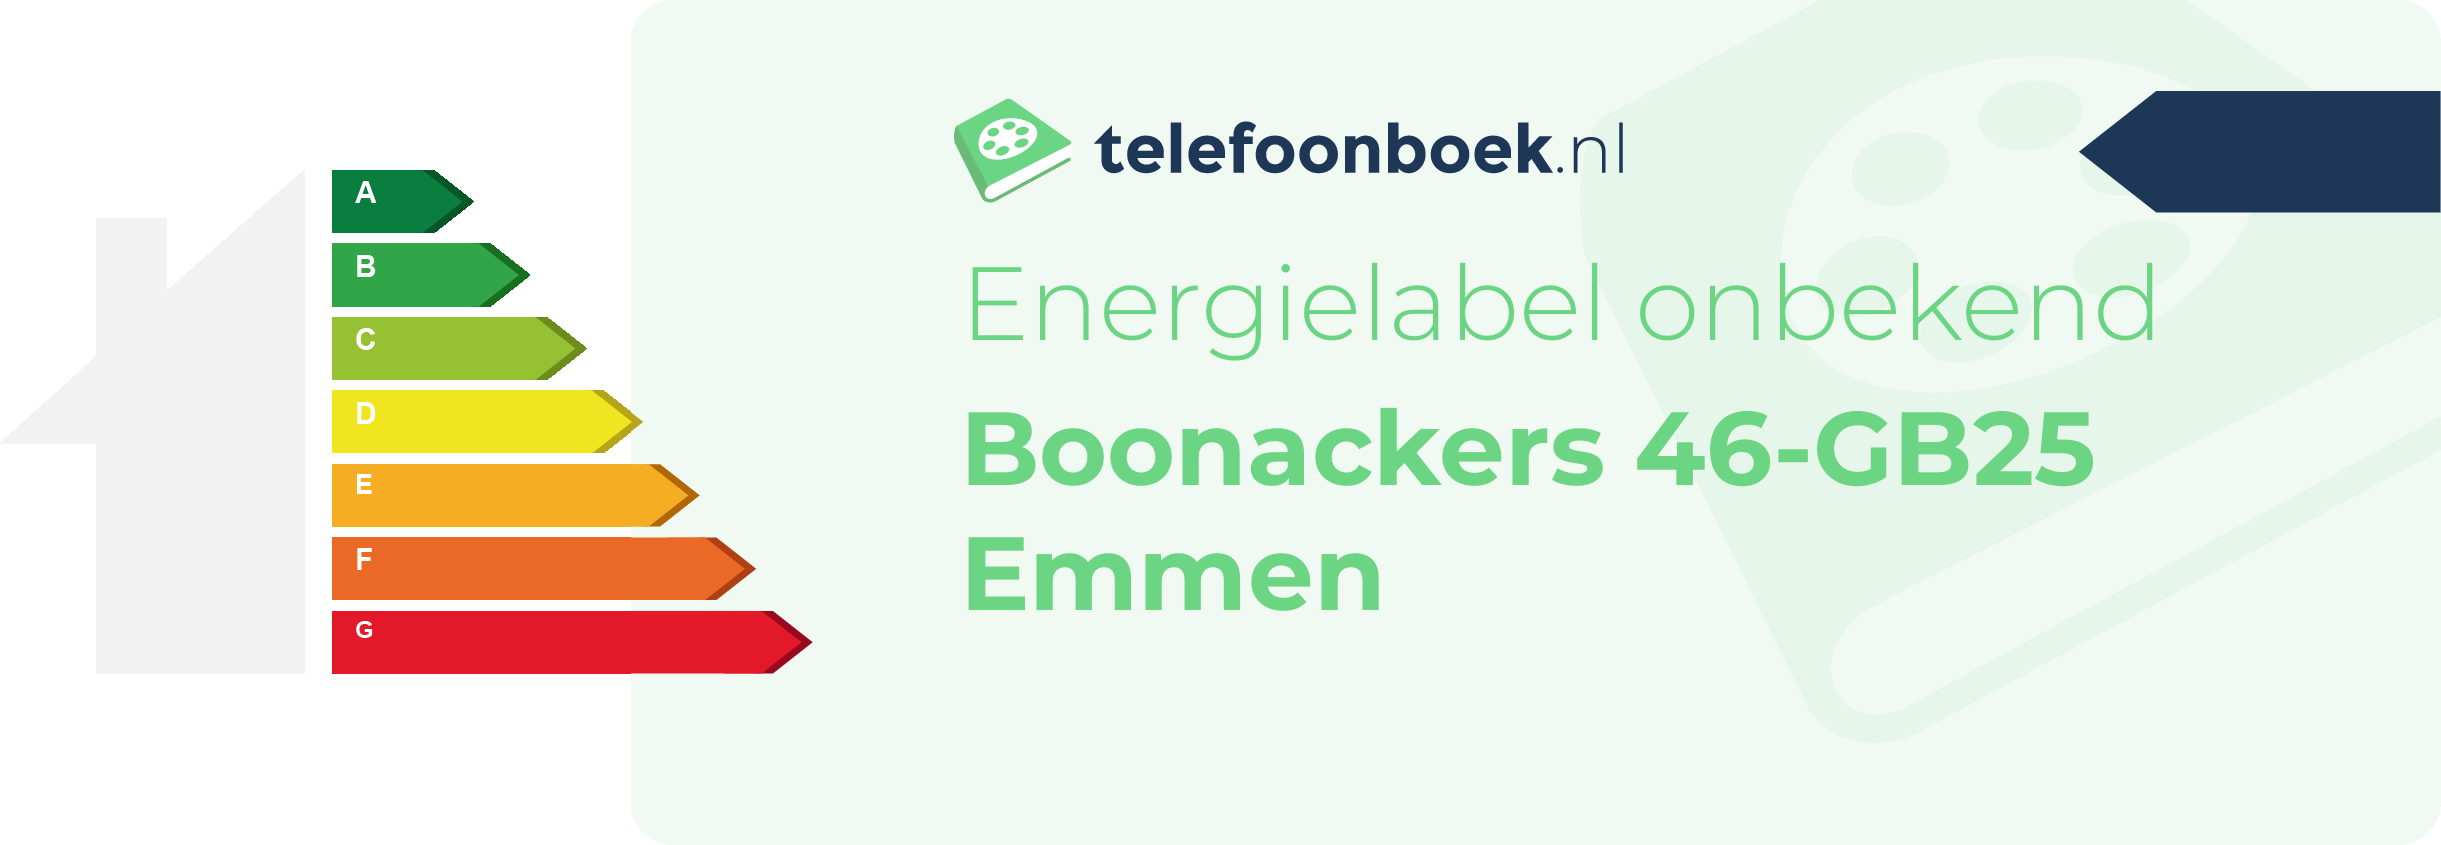 Energielabel Boonackers 46-GB25 Emmen